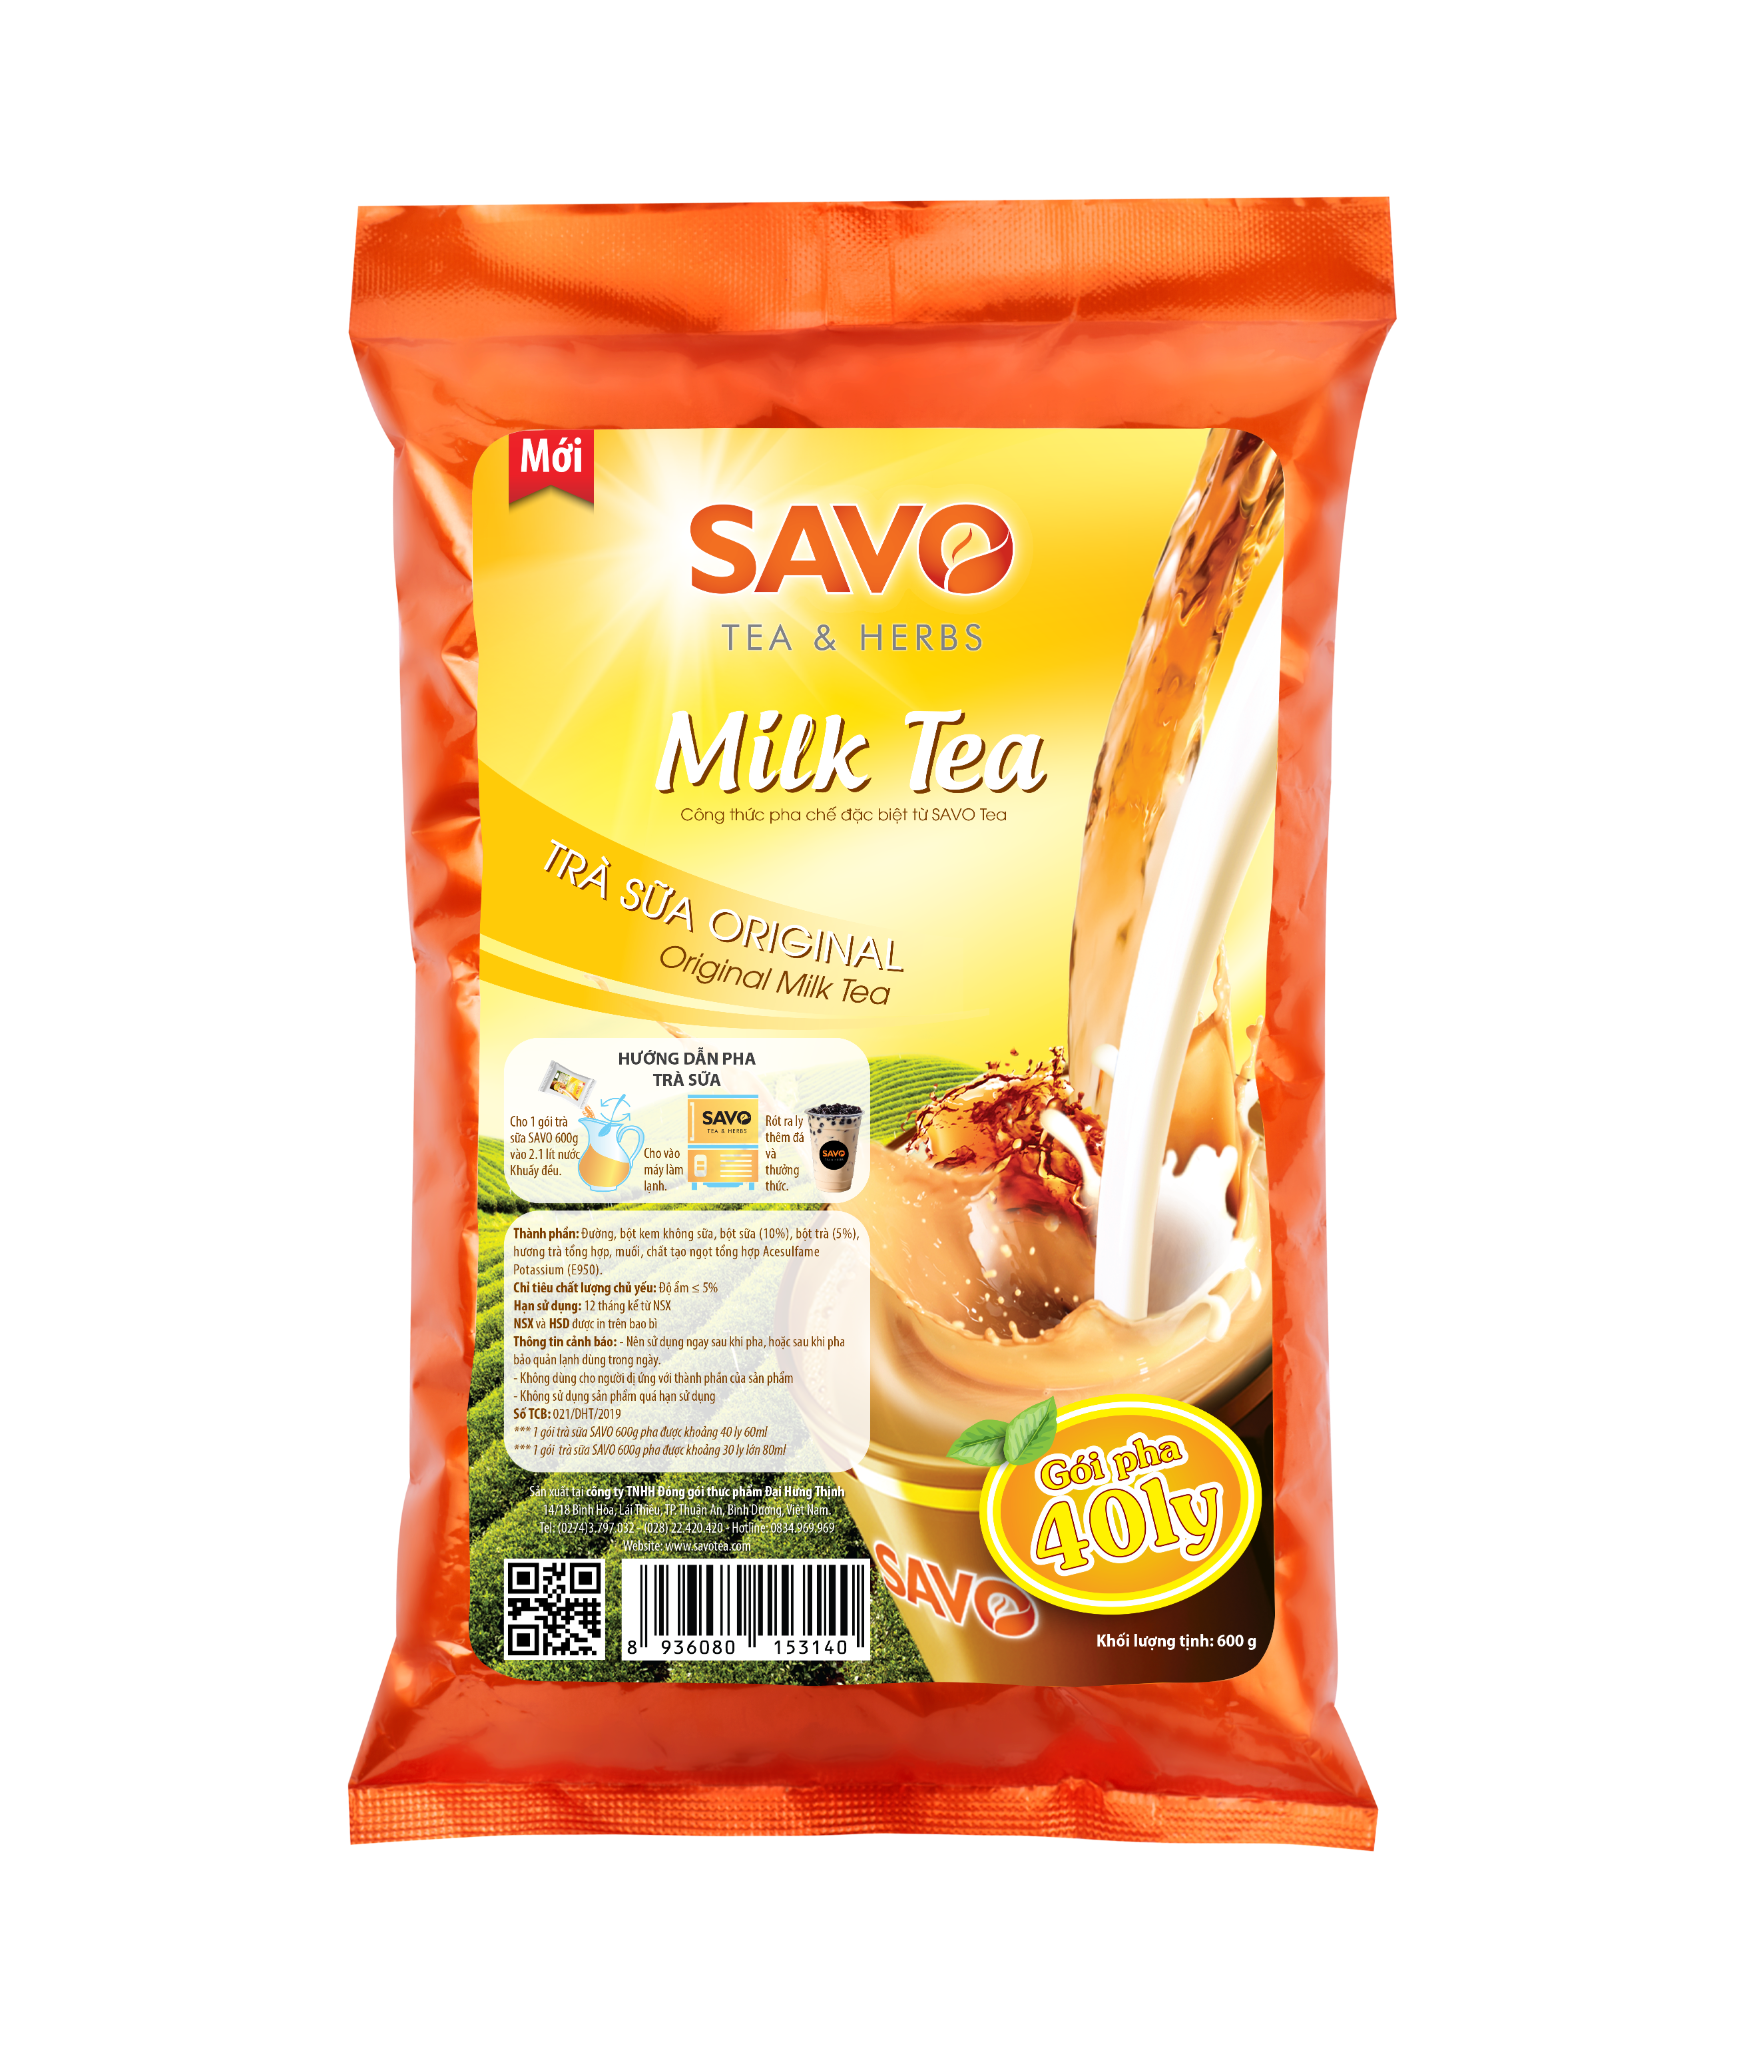  Trà Sữa Truyền Thống SAVO (Túi 600 g) 